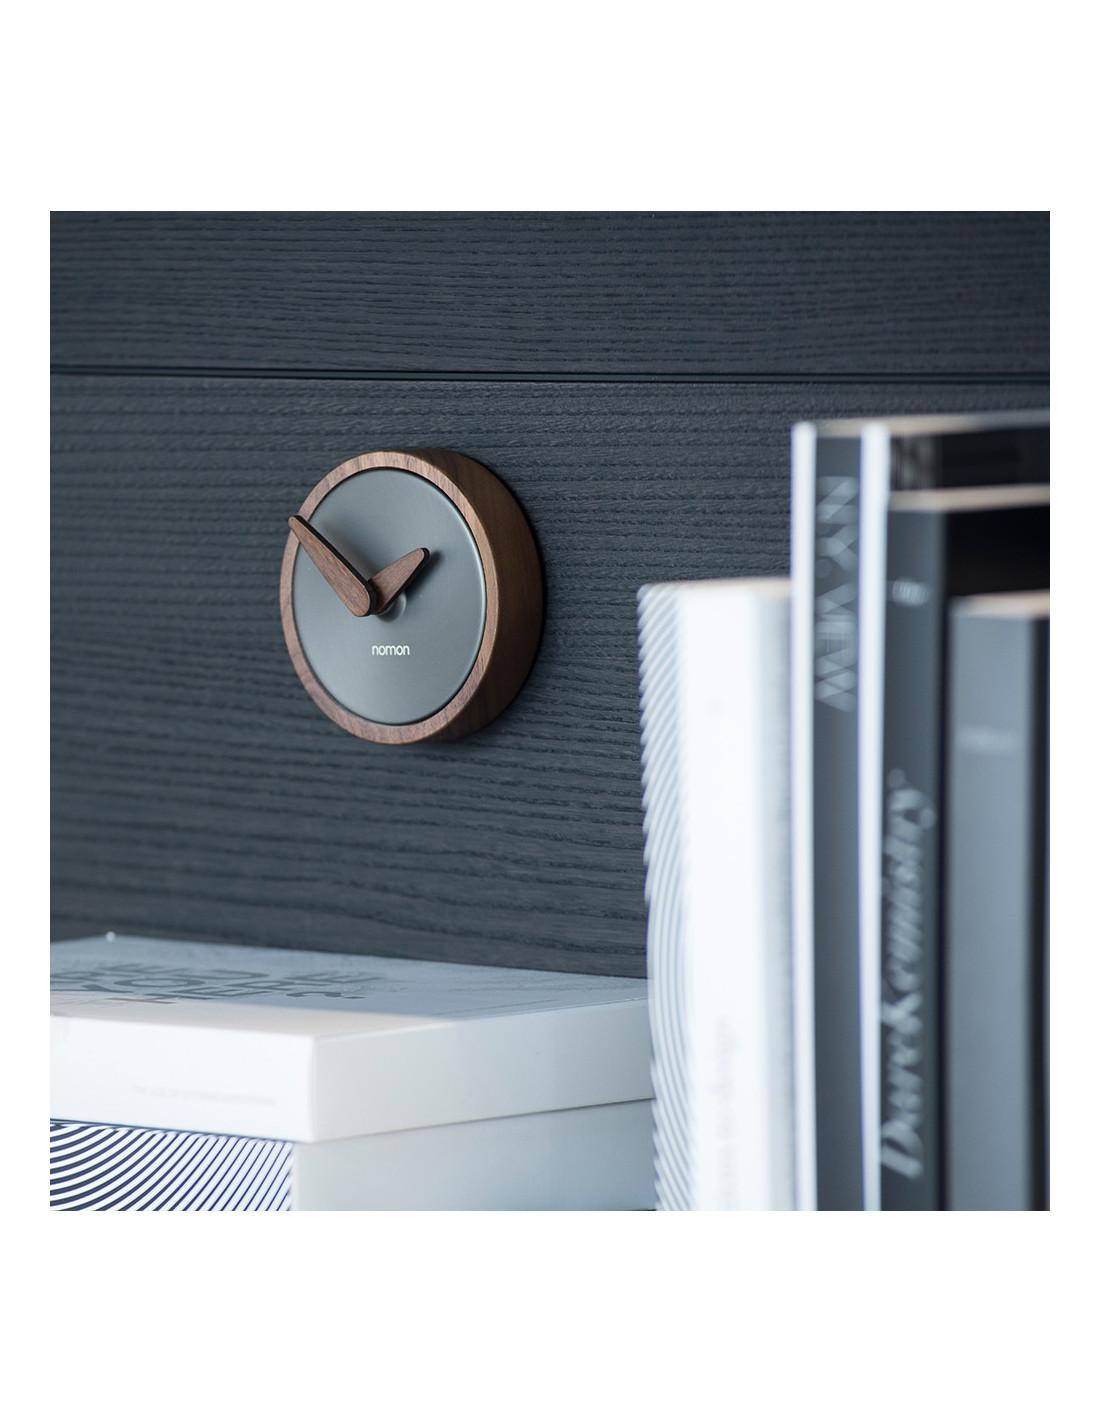 Die Atom Wall Clock ist eine innovative und langlebige Wanduhr, die Ihren Raum mit großer Gleichmäßigkeit und gutem Geschmack abdeckt
Atom T Wanduhr : Gehäuse aus graphitfarbenem Messing, Zeiger und Gehäuse aus Nussbaum.
Nicht für den Außeneinsatz